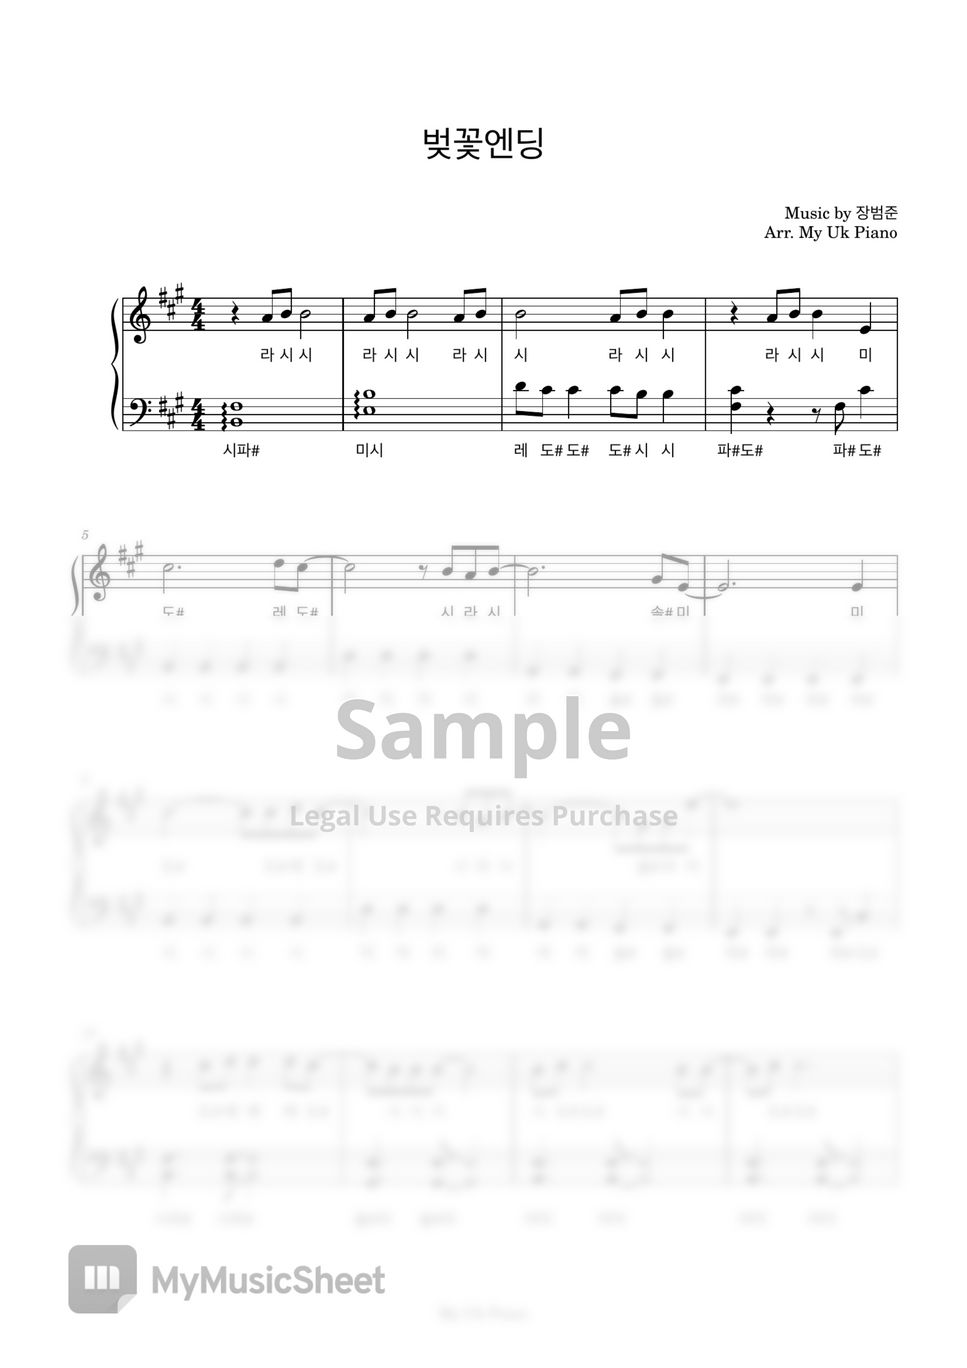 장범준 - 벚꽃엔딩 (쉬운계이름악보) by My Uk Piano